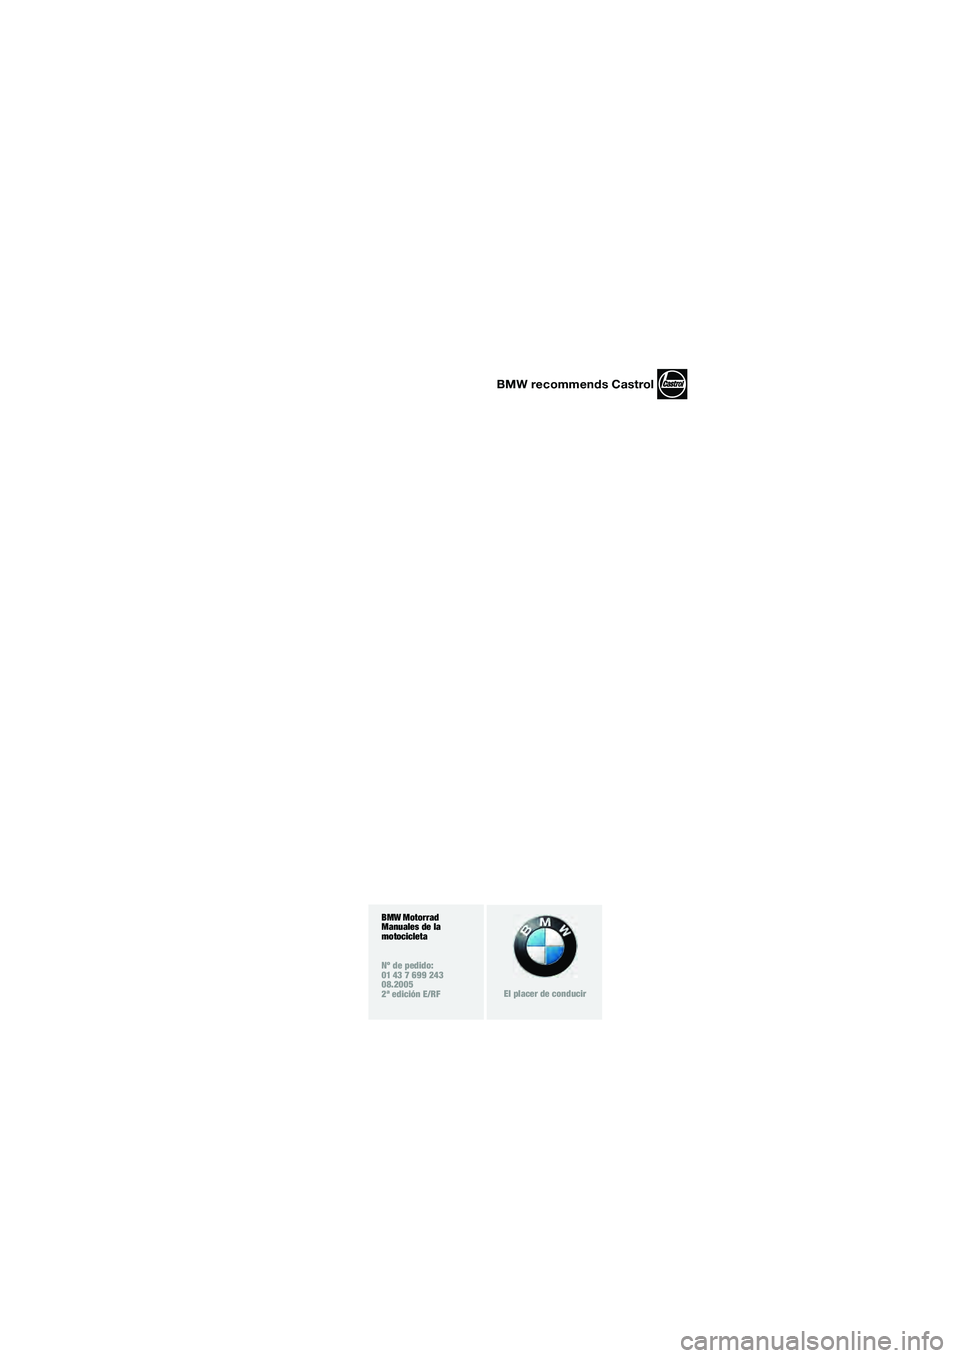 BMW MOTORRAD K 1200 LT 2005  Manual de instrucciones (in Spanish) 1
BMW Motorrad
Manuales de la 
motocicleta
Nº de pedido:
01 43 7 699 243
08.2005
2ª edición E/RF
El placer de conducir
BMW recommends Castrol
10LTbke6.book  Seite 3  Freitag, 1. Juli 2005  9:15 09 